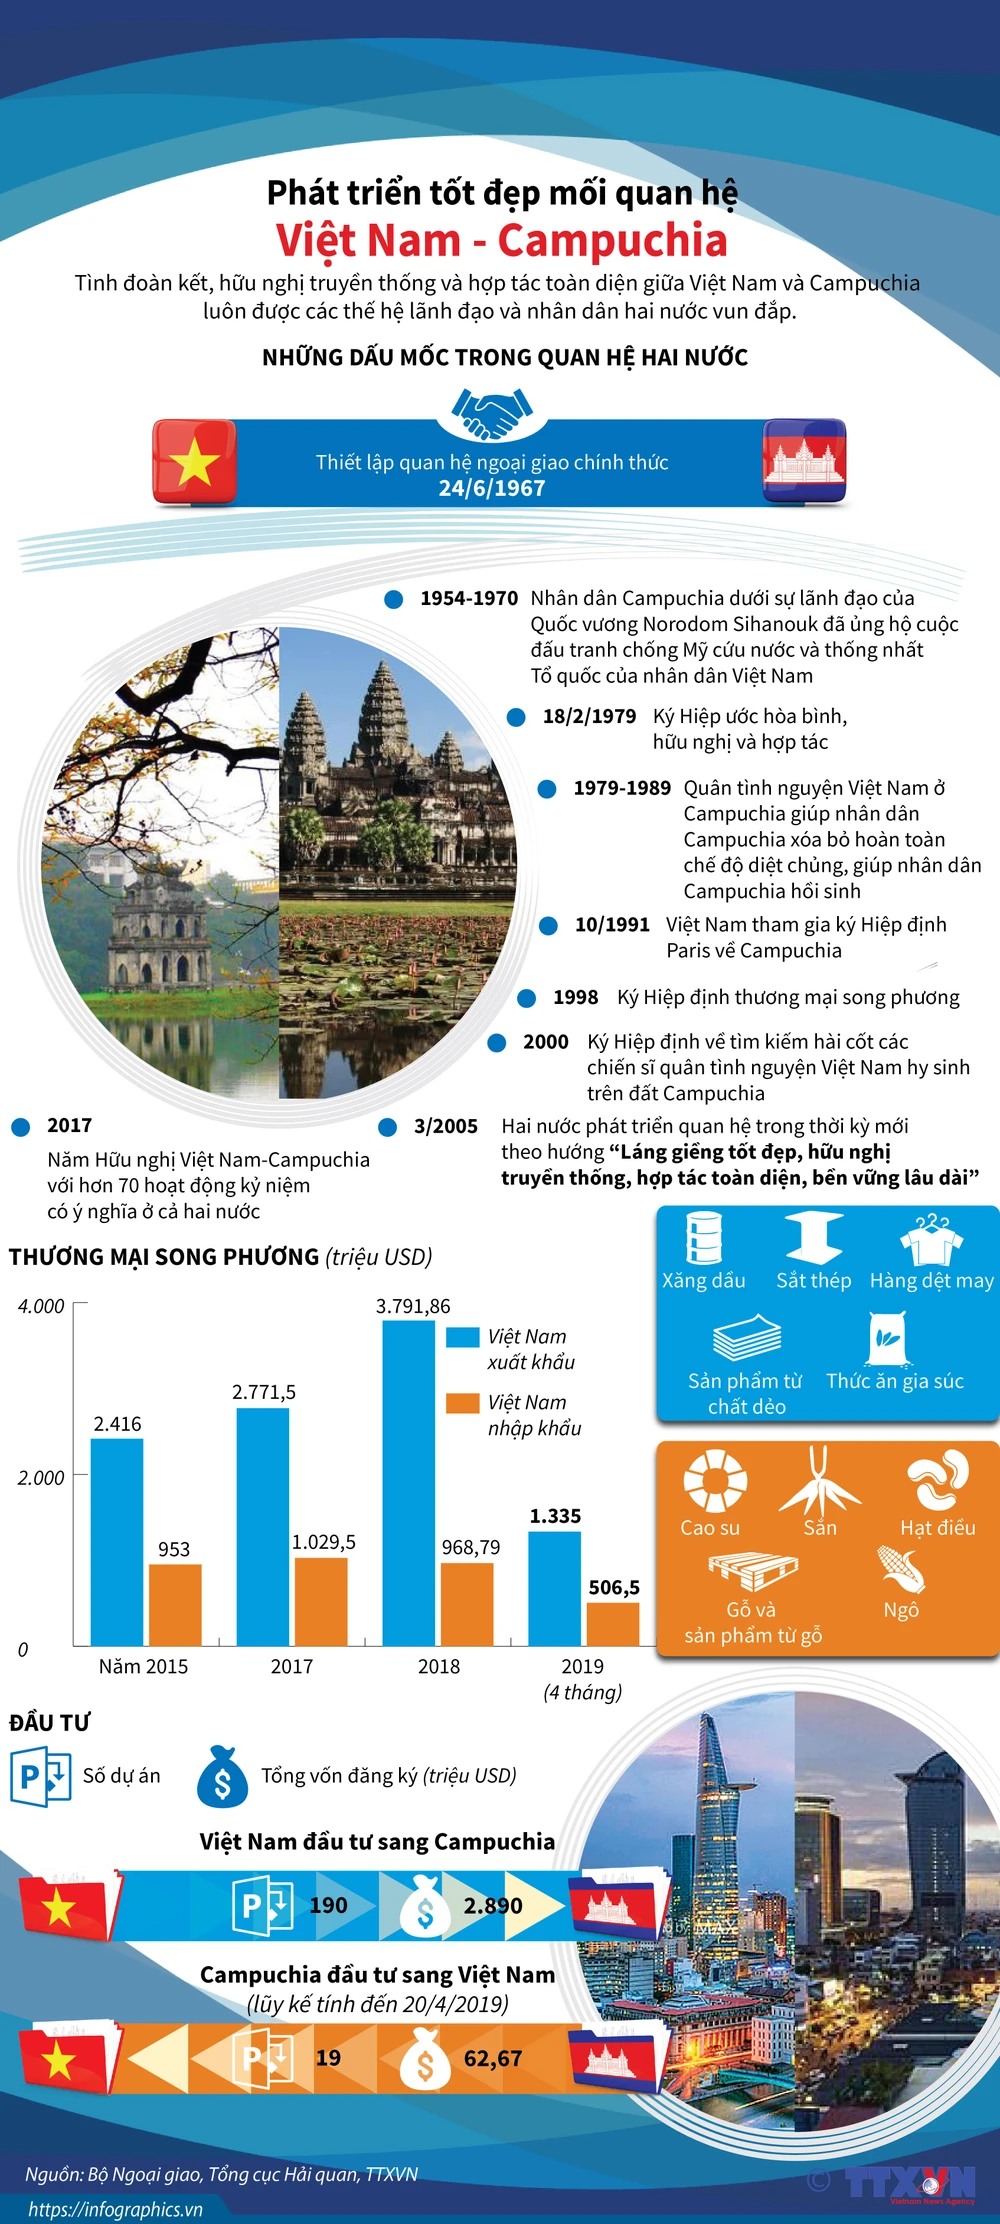 400+ Angkor Wat & ảnh Campuchia miễn phí - Pixabay